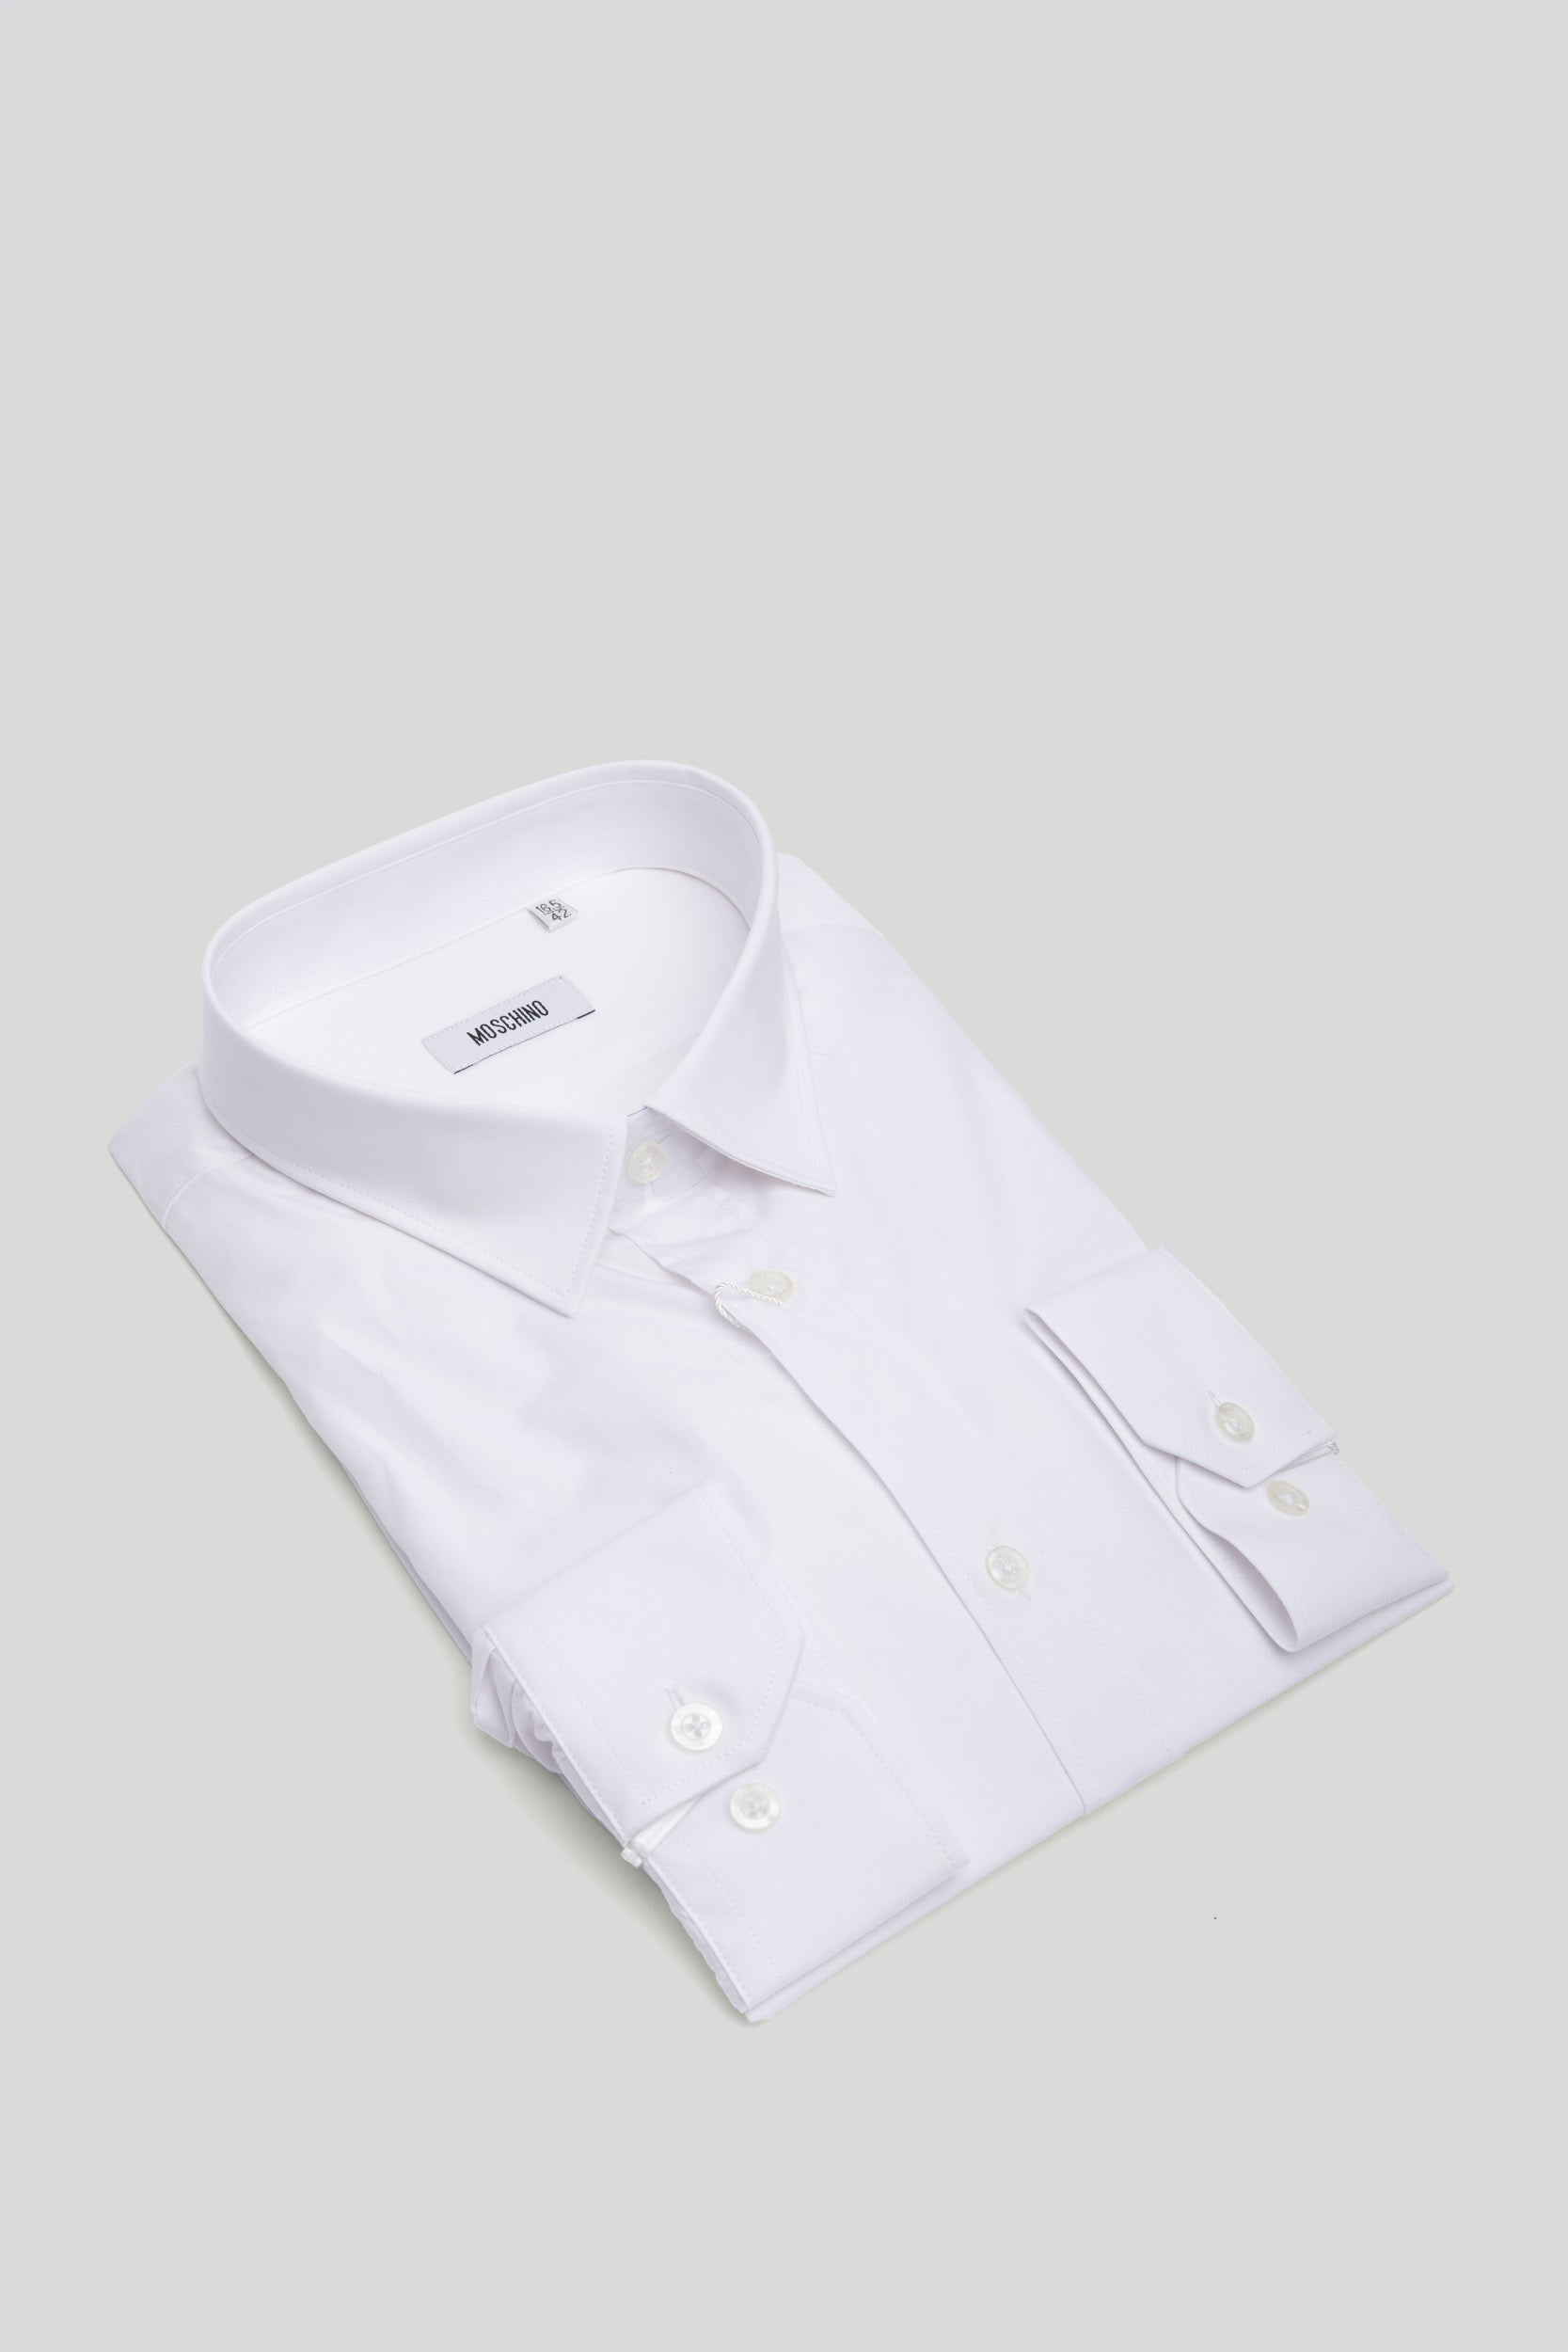 MOSCHINO White Shirt